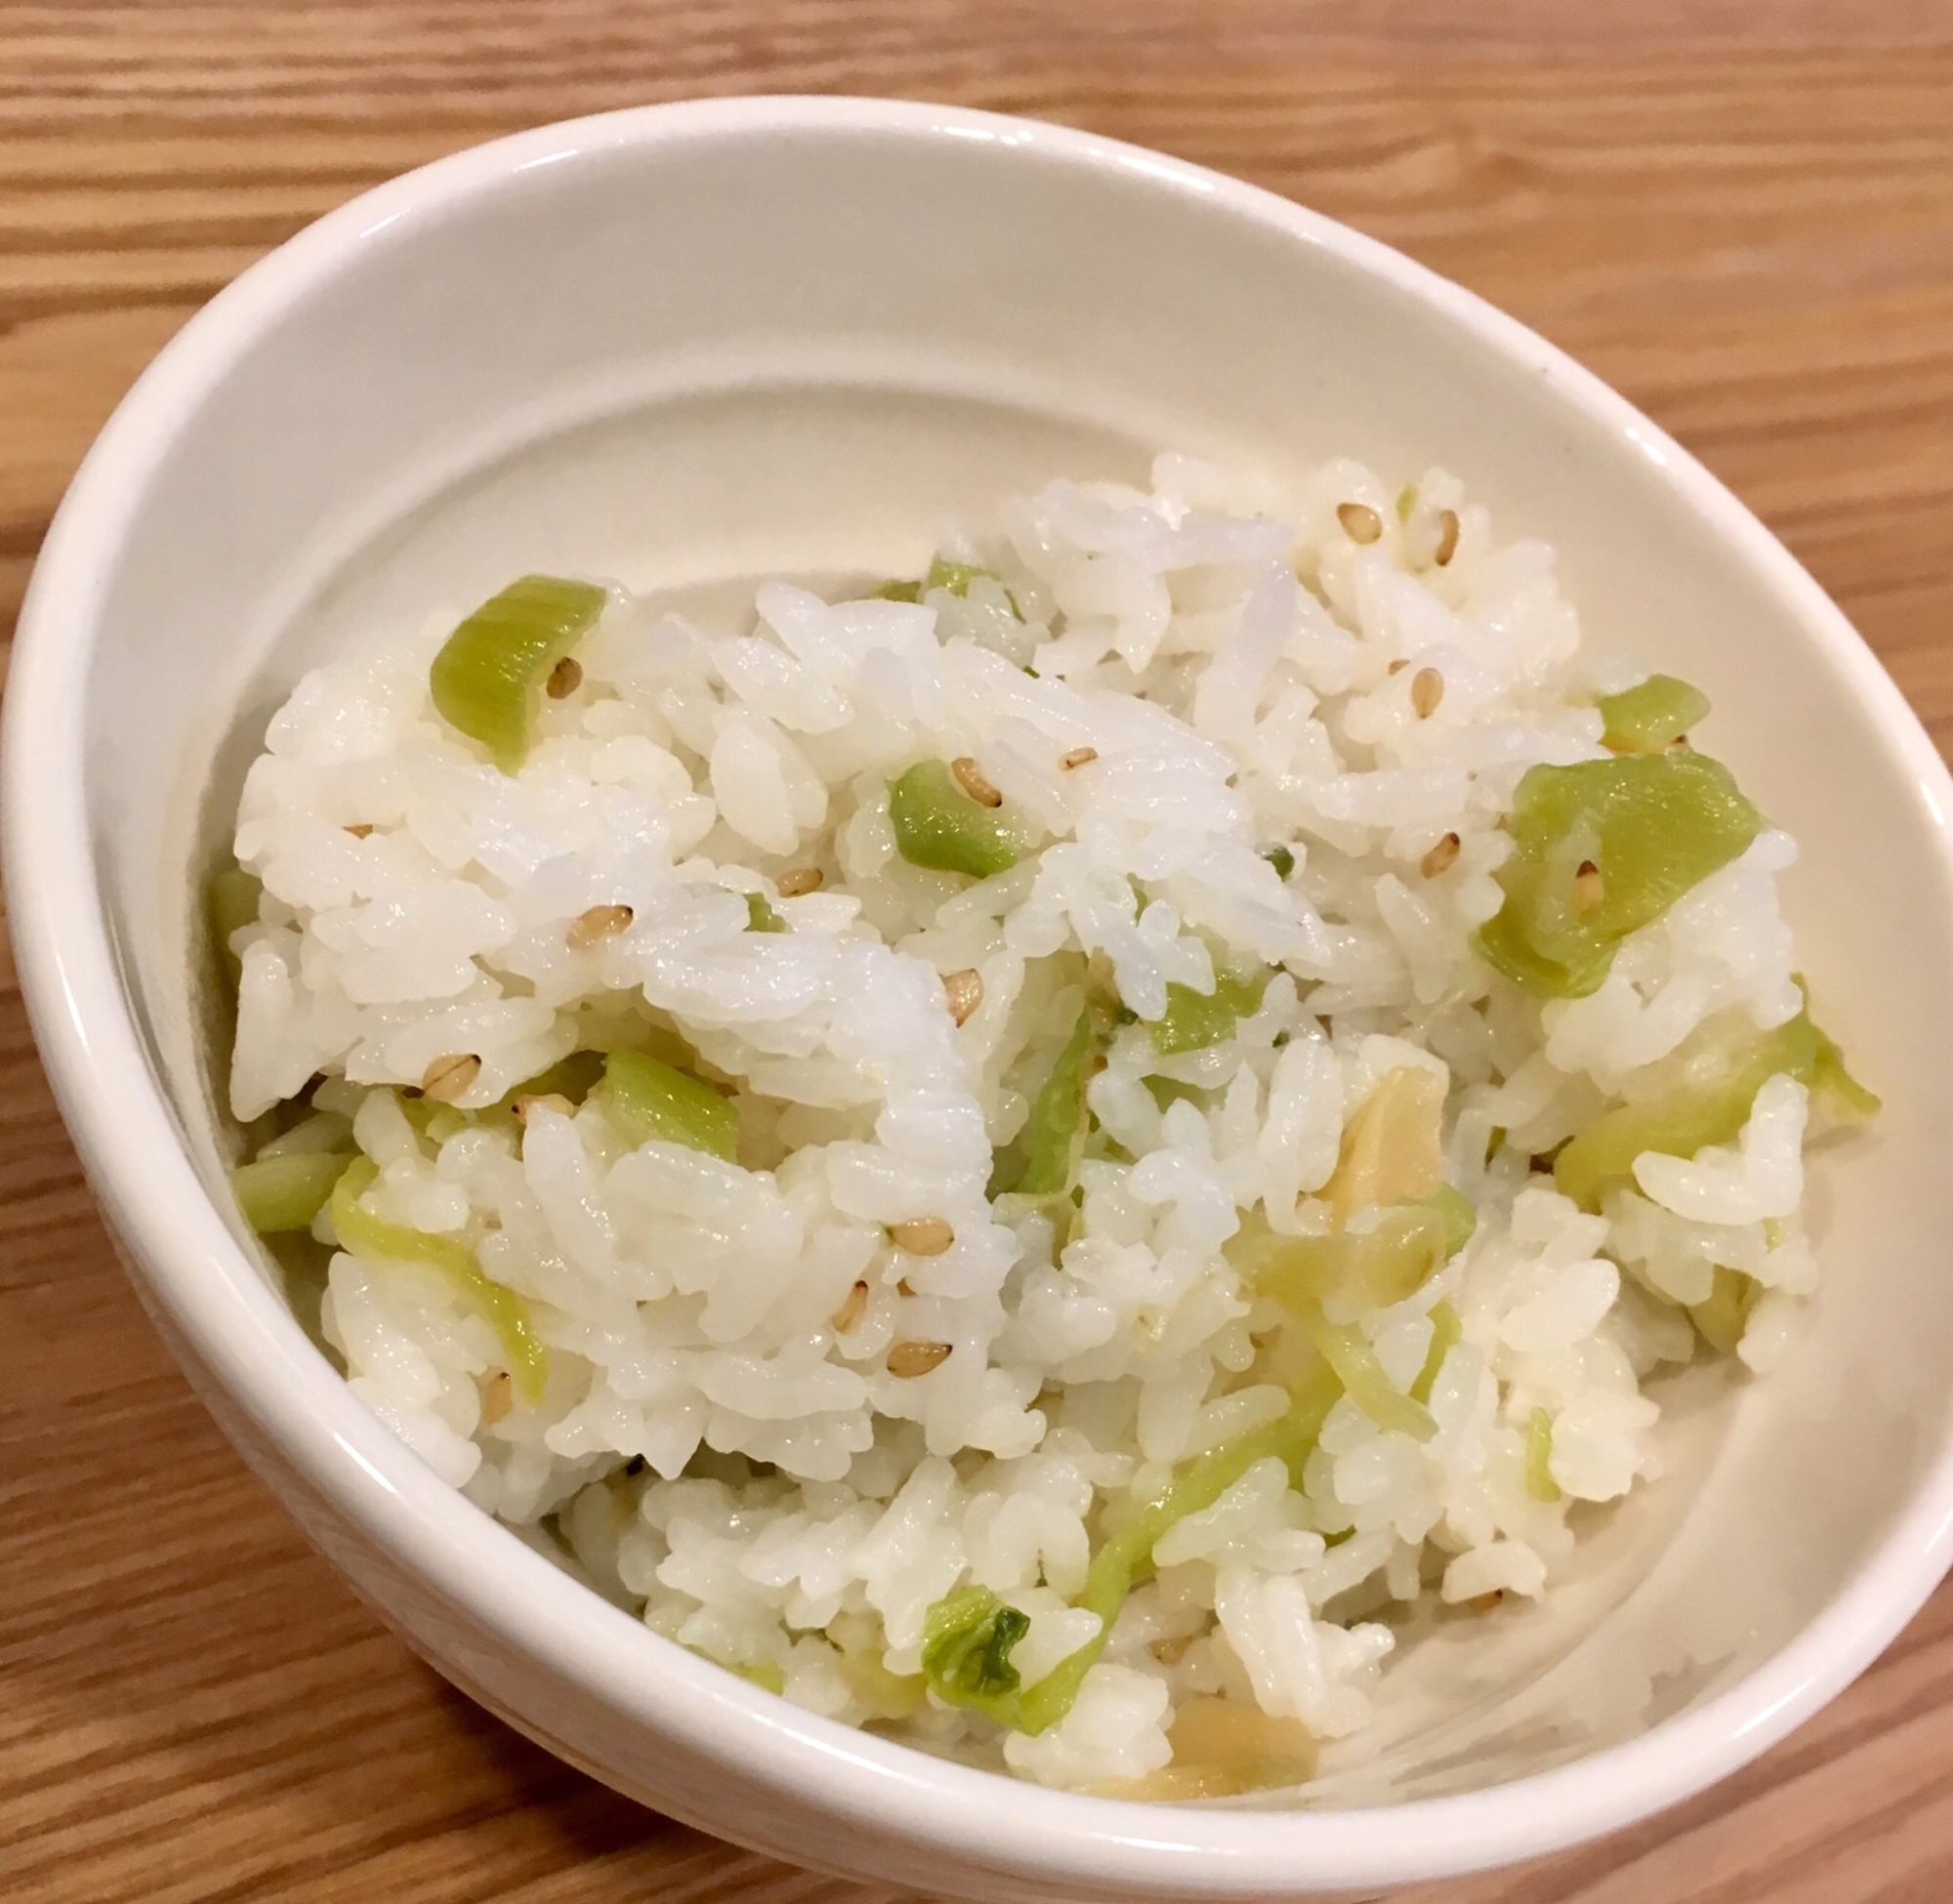 冷凍青高菜と白ごまの混ぜご飯♪